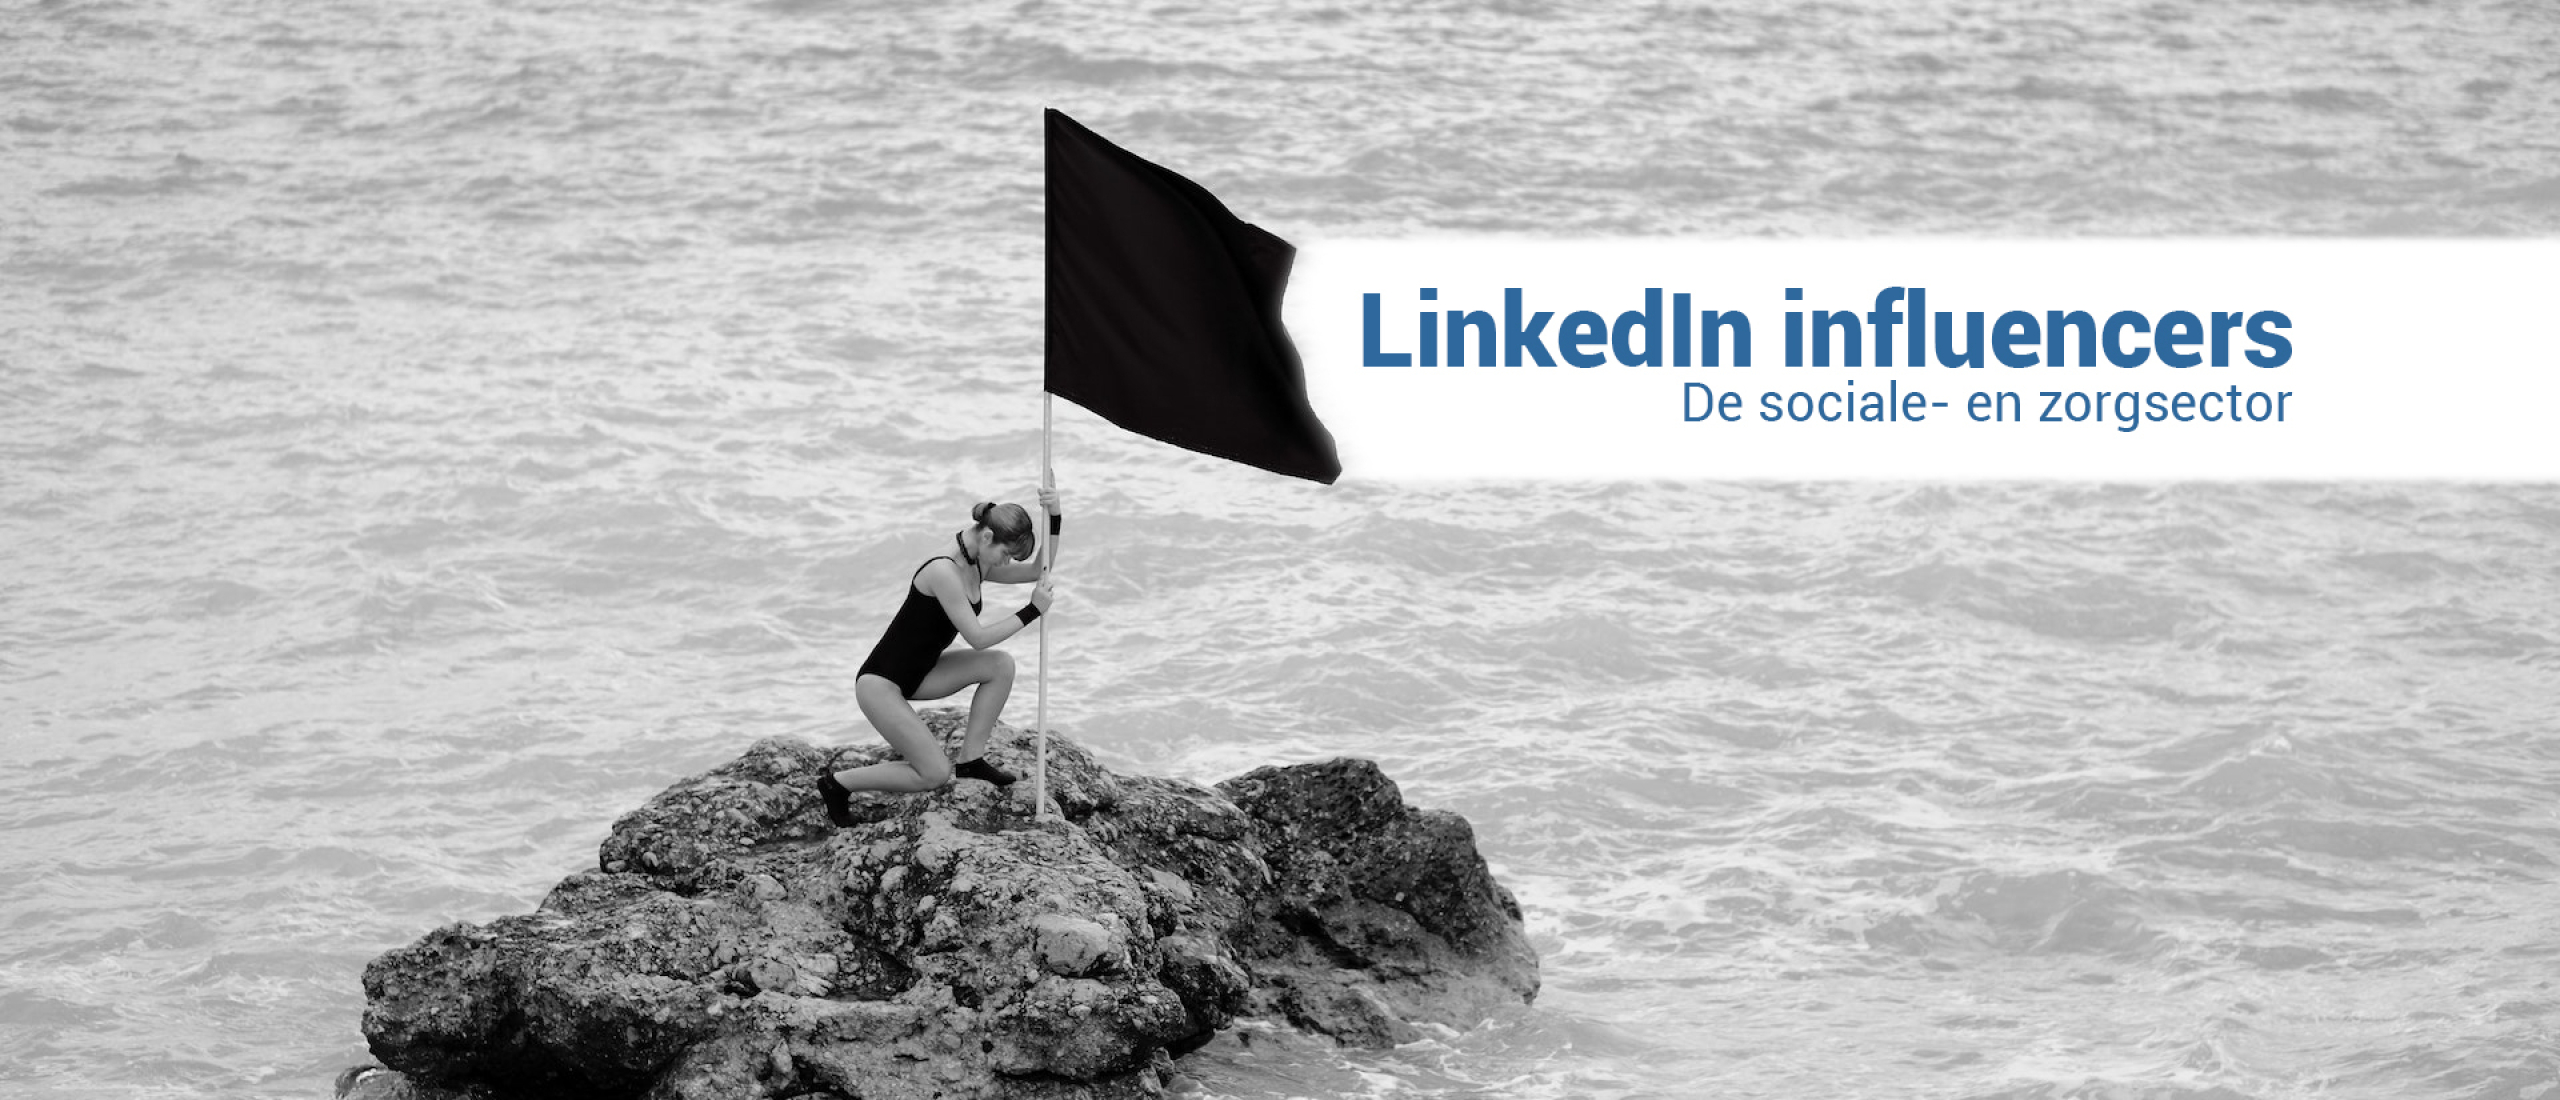 #1 LinkedIn Influencers in de sociale- en zorgsector